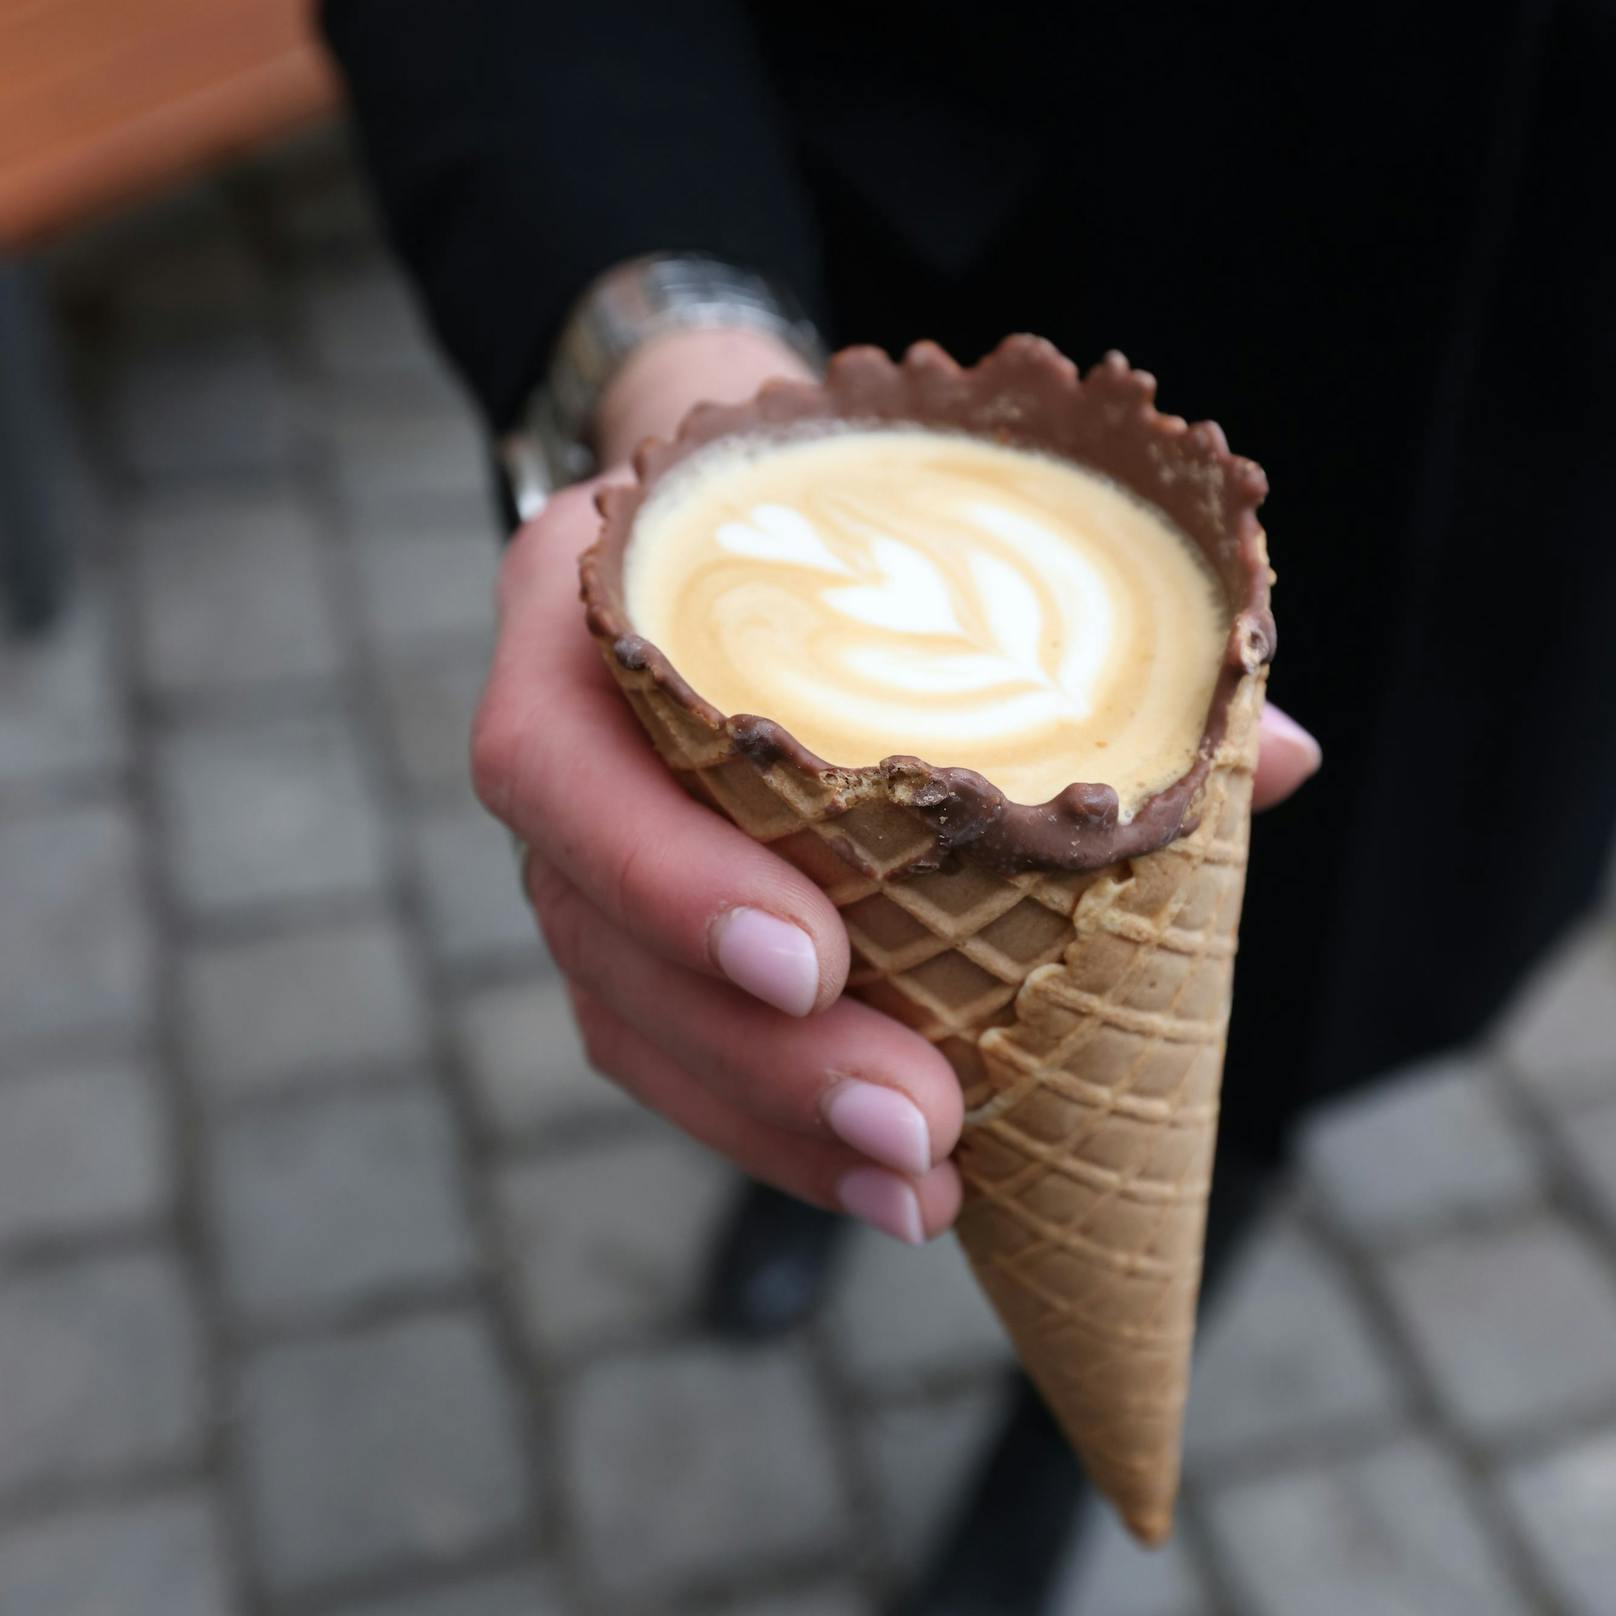 Statt wie bisher 5,50 Euro verlangt das Wiener Fenster-Café nun 9,50 Euro für den "Fensterccino". Die Teuerungen seien der Hauptgrund dafür, erklärt der Besitzer.